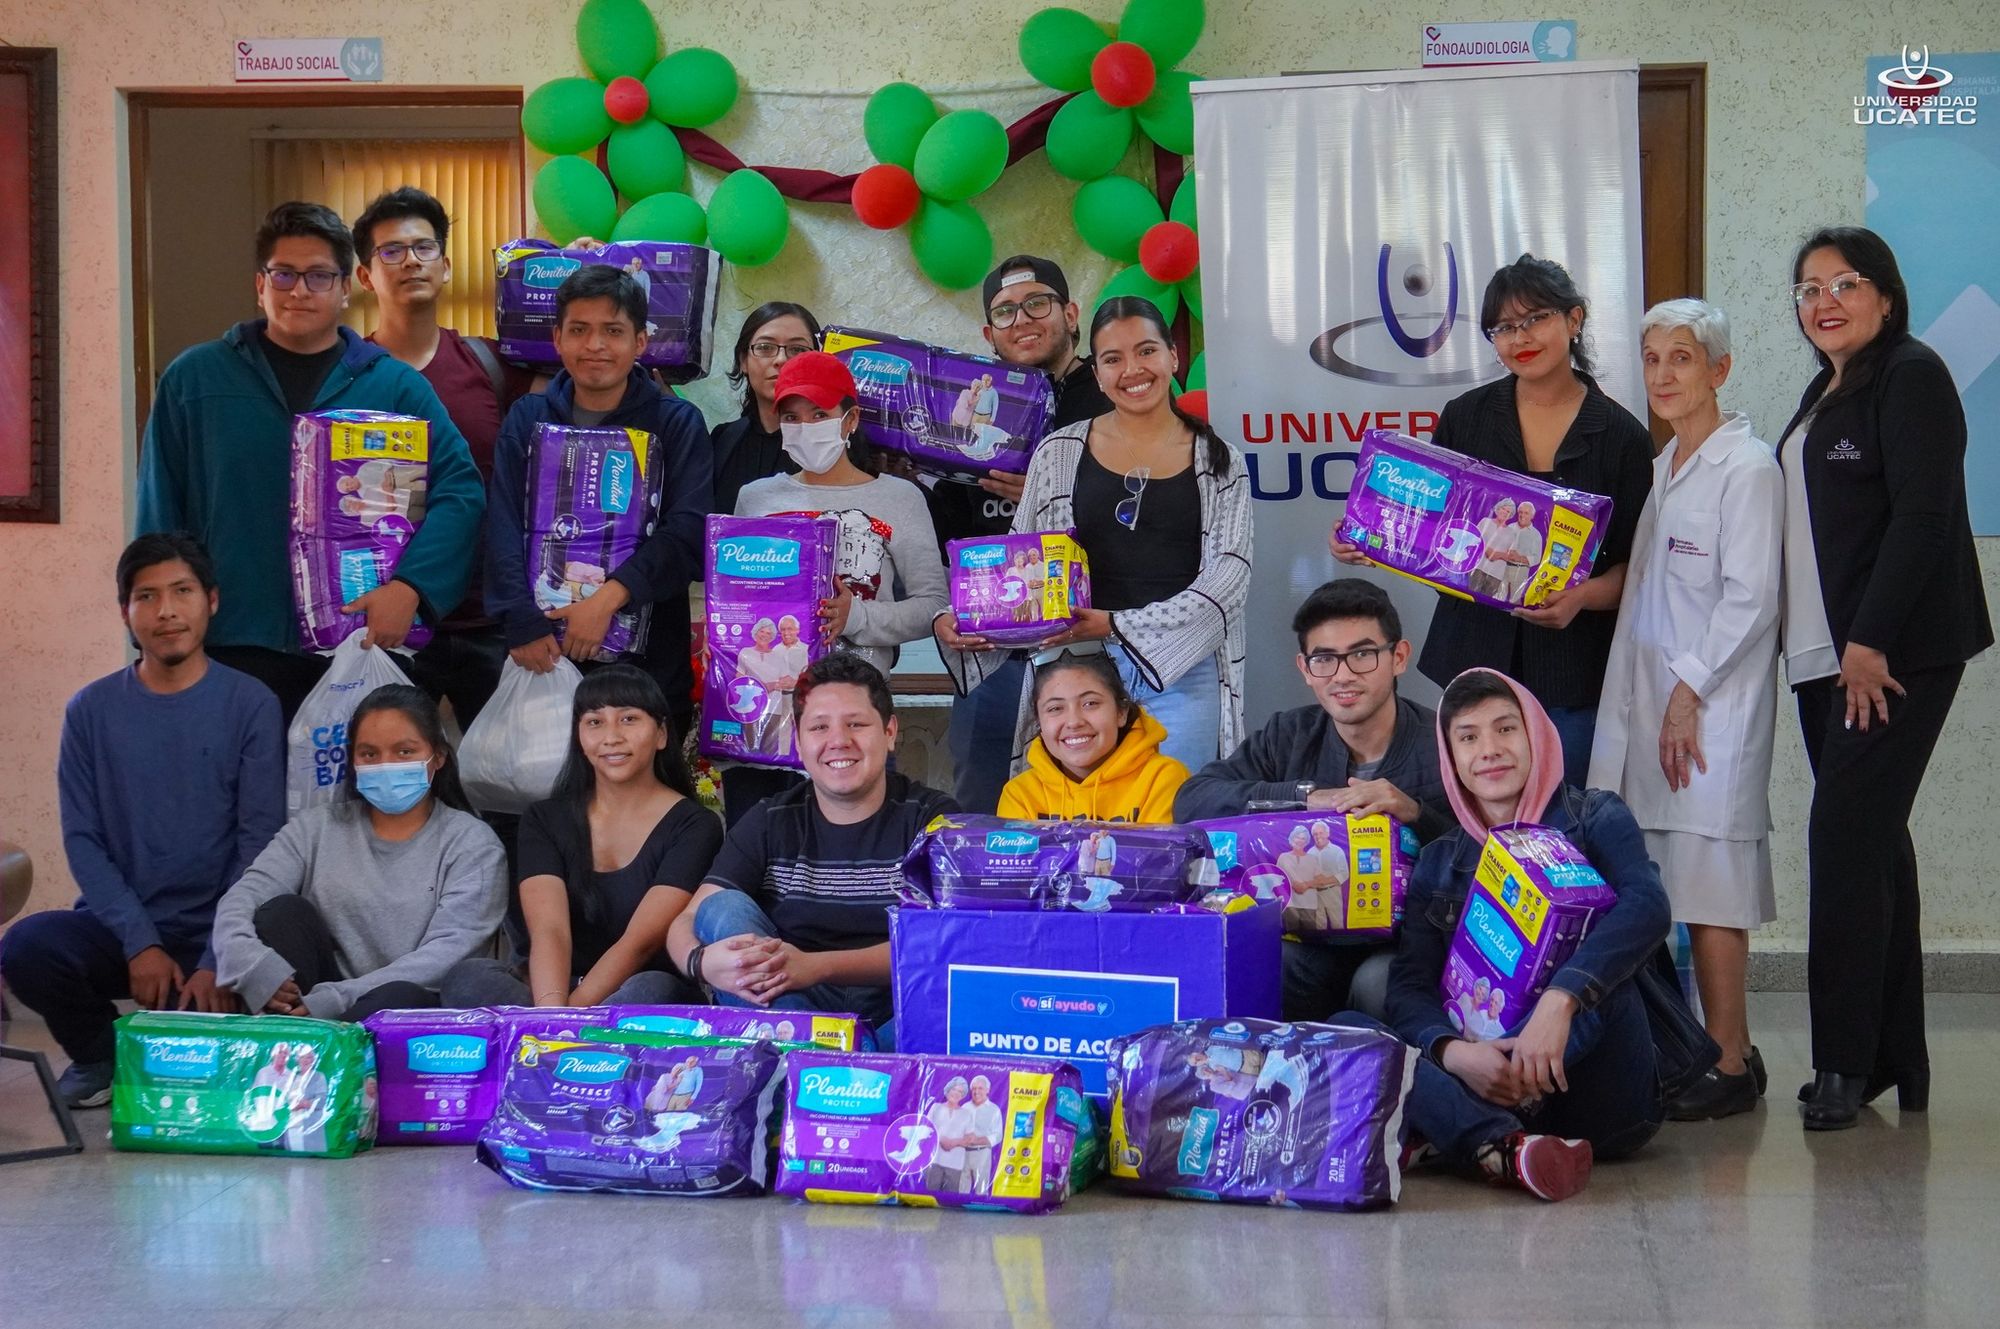 Estudiantes de la UCATEC realizaron una exitosa campaña de recolección de pañales para el Centro Puntiti